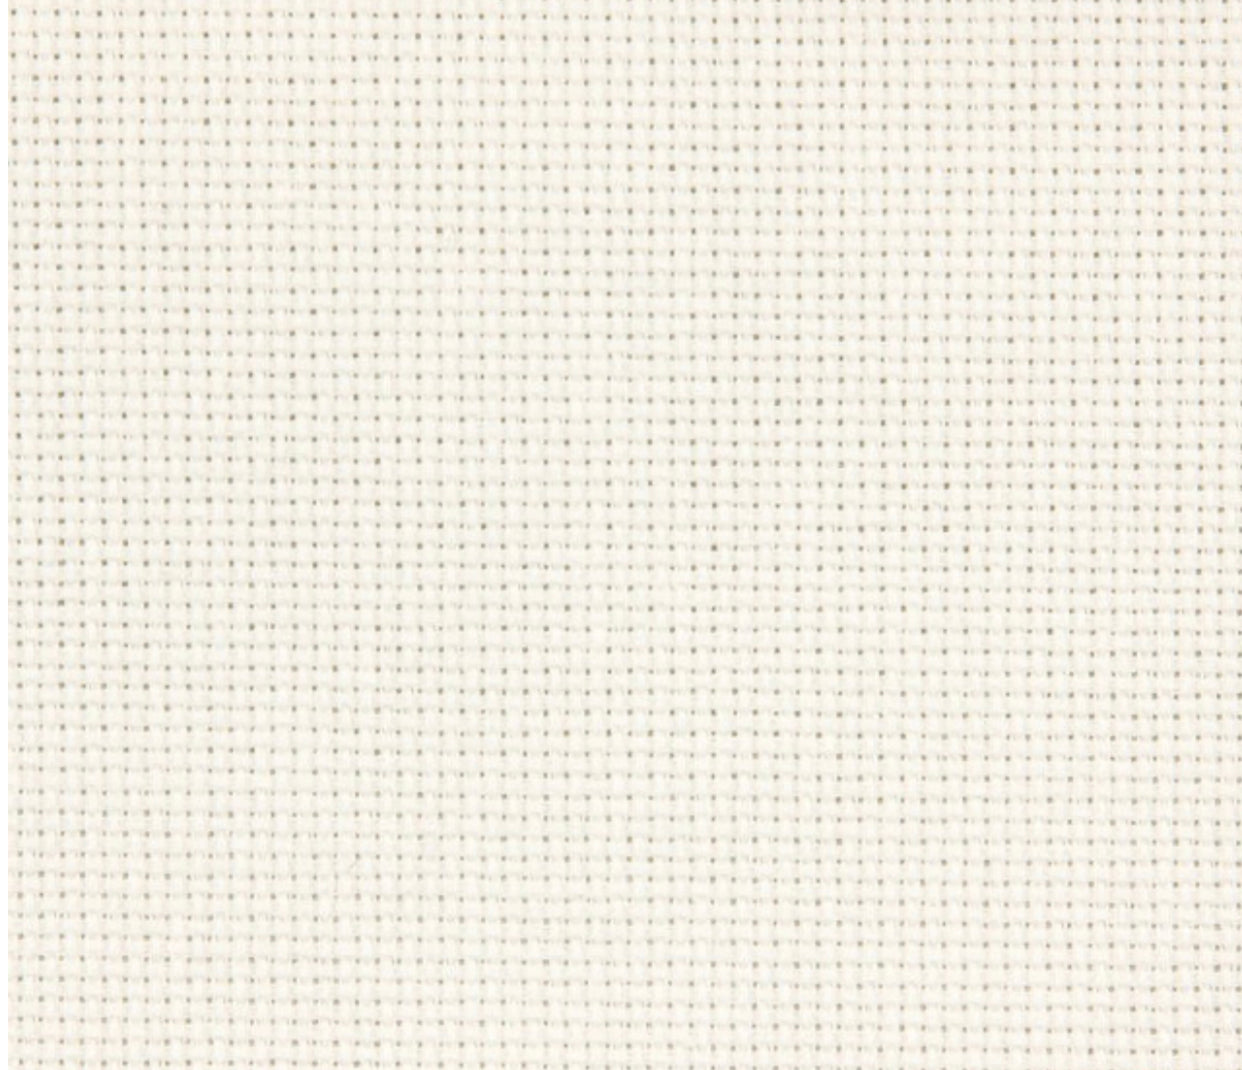 AIDA-Stoff 14ct Farbe 101 (Weiß) - Zweigart